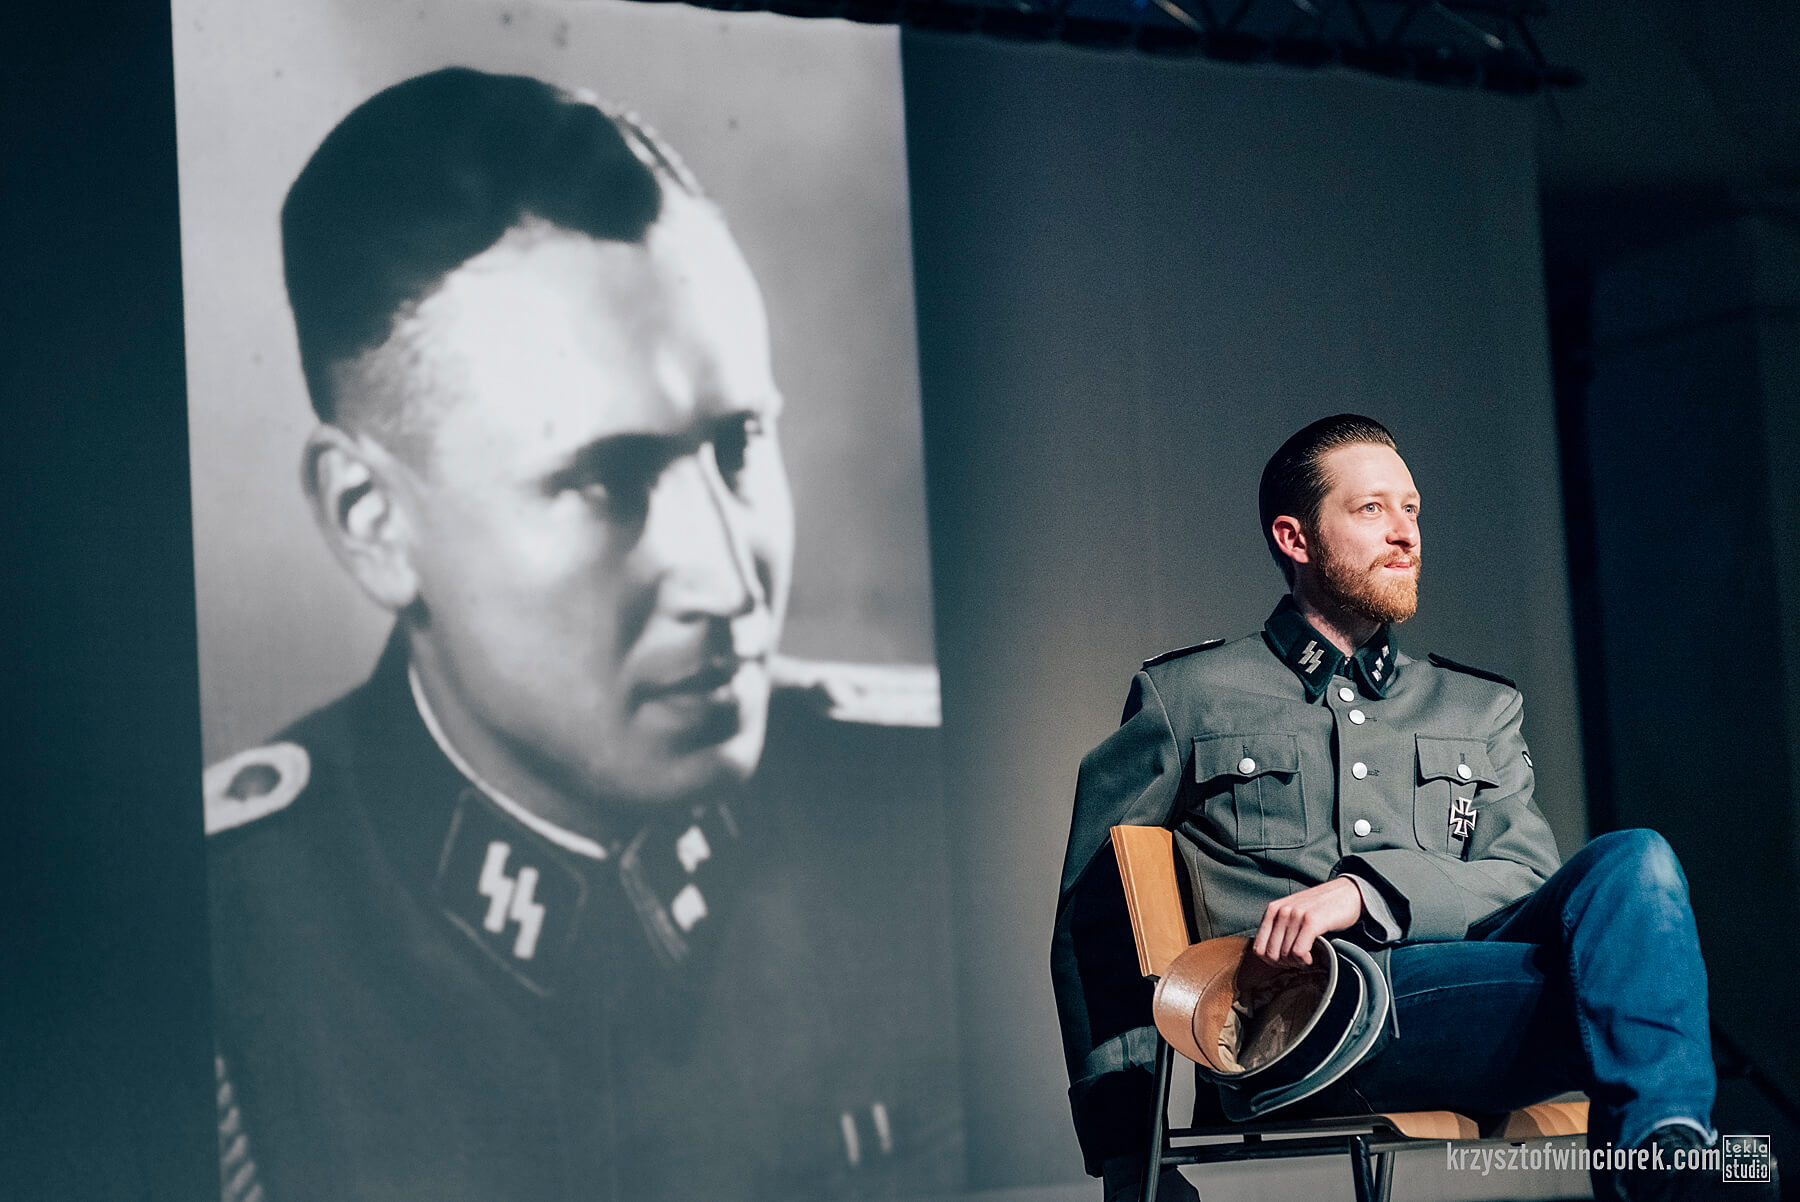 Po prawej stronie siedzi na krześle aktor z zarostem, w mundurze SS. Za nim wyświetlane jest zdjęcie historyczne jakiegoś mężczyzny, również w mundurze SS.